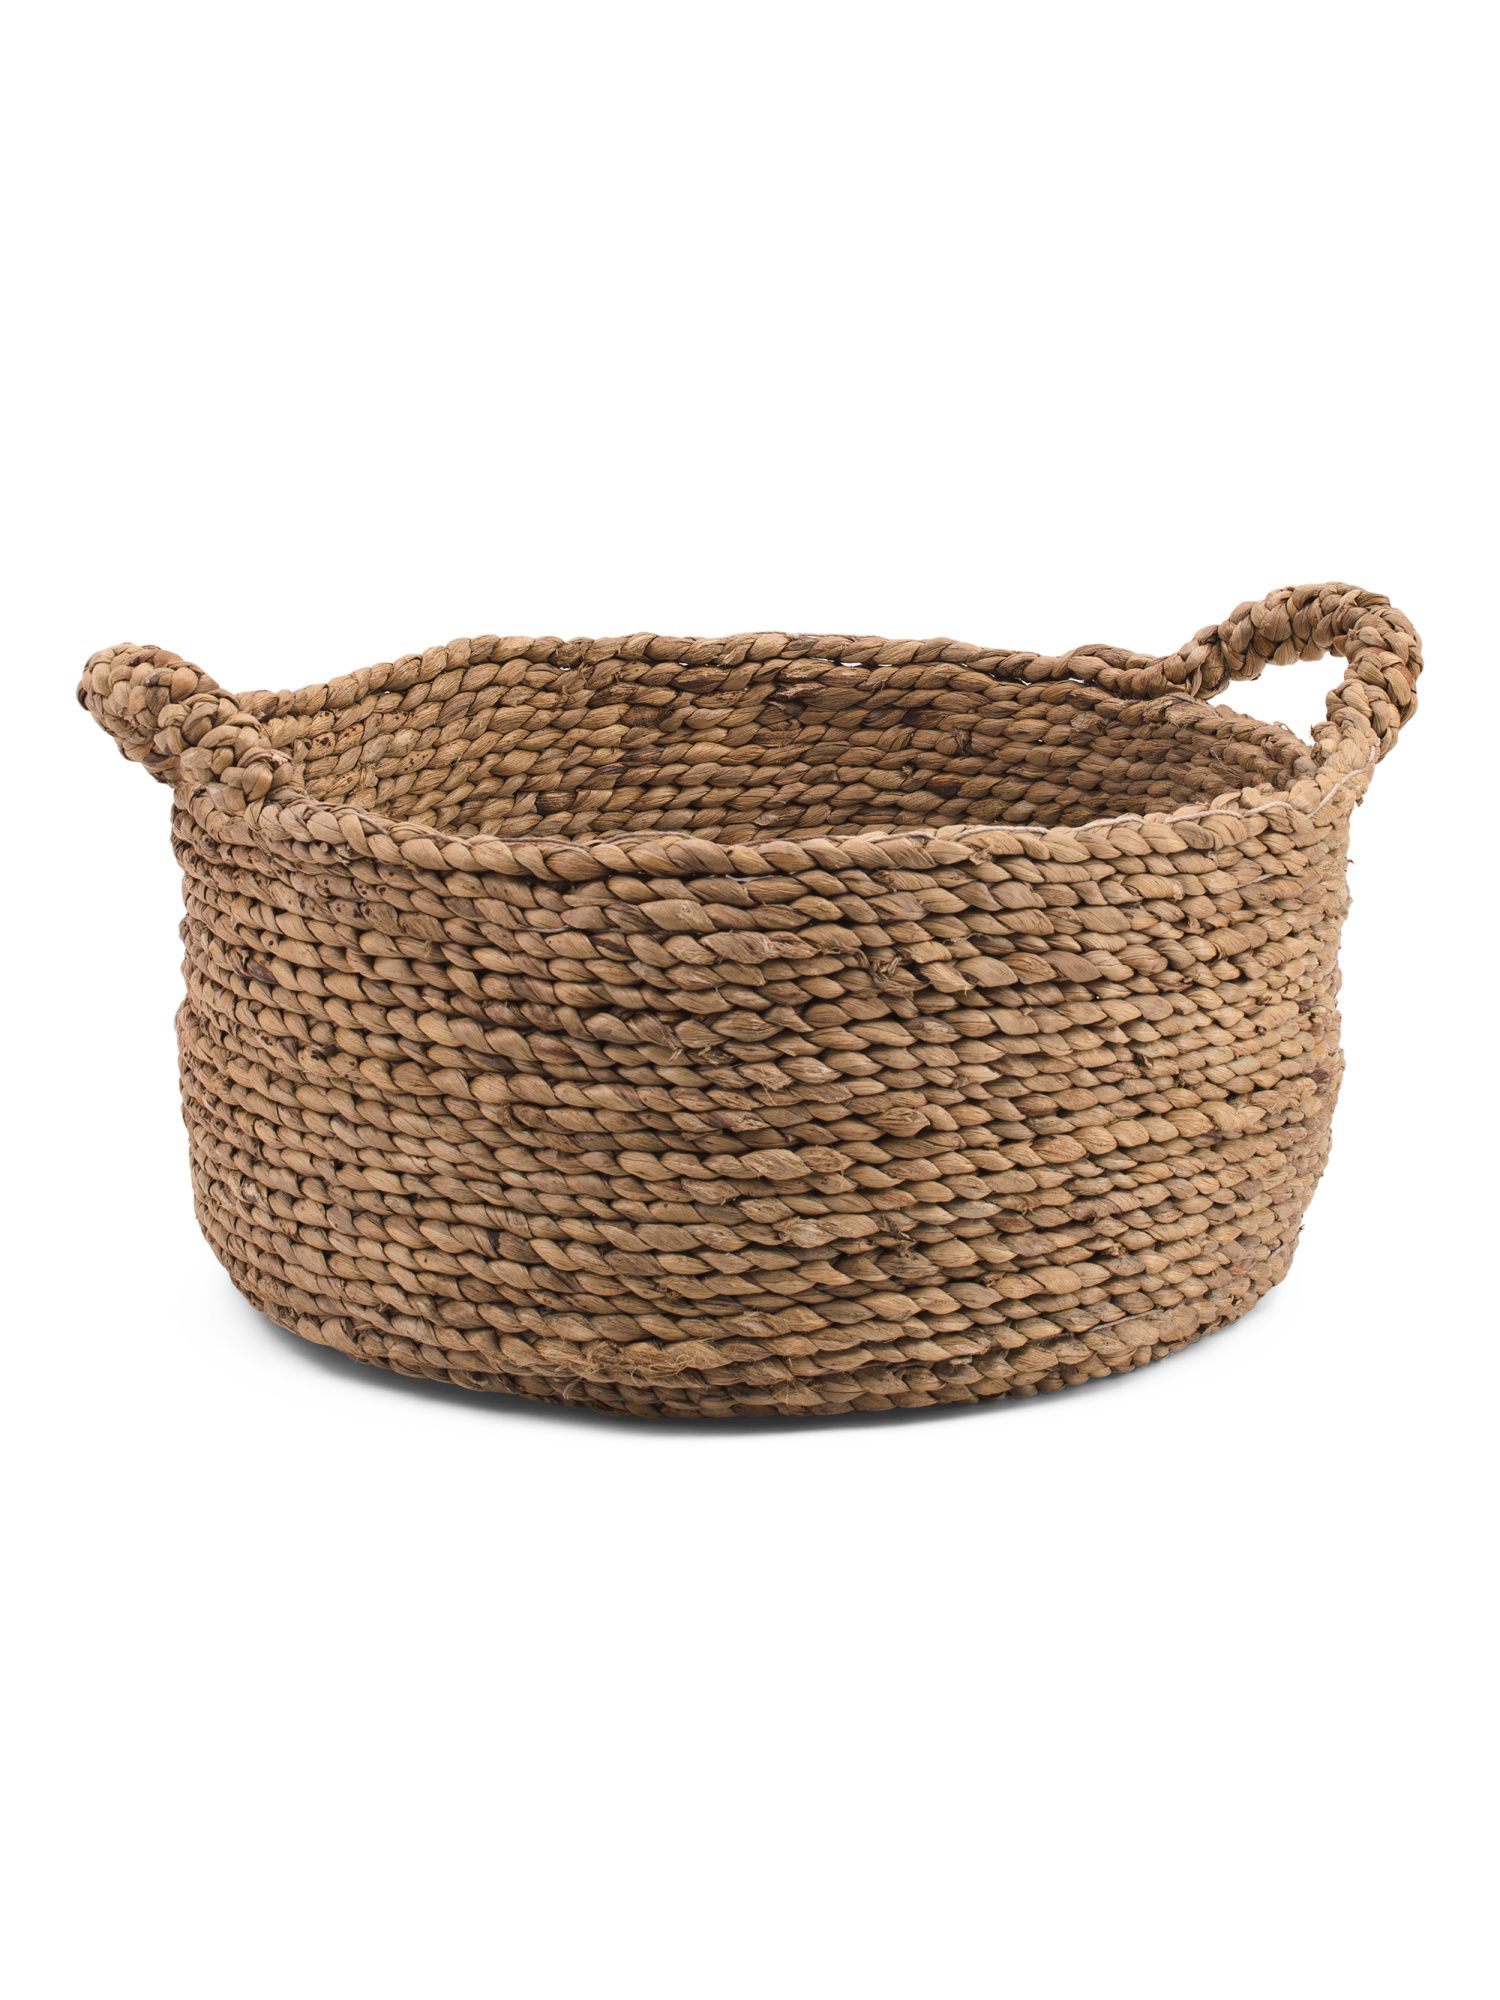 Medium Braided Water Hyacinth Round Basket | TJ Maxx